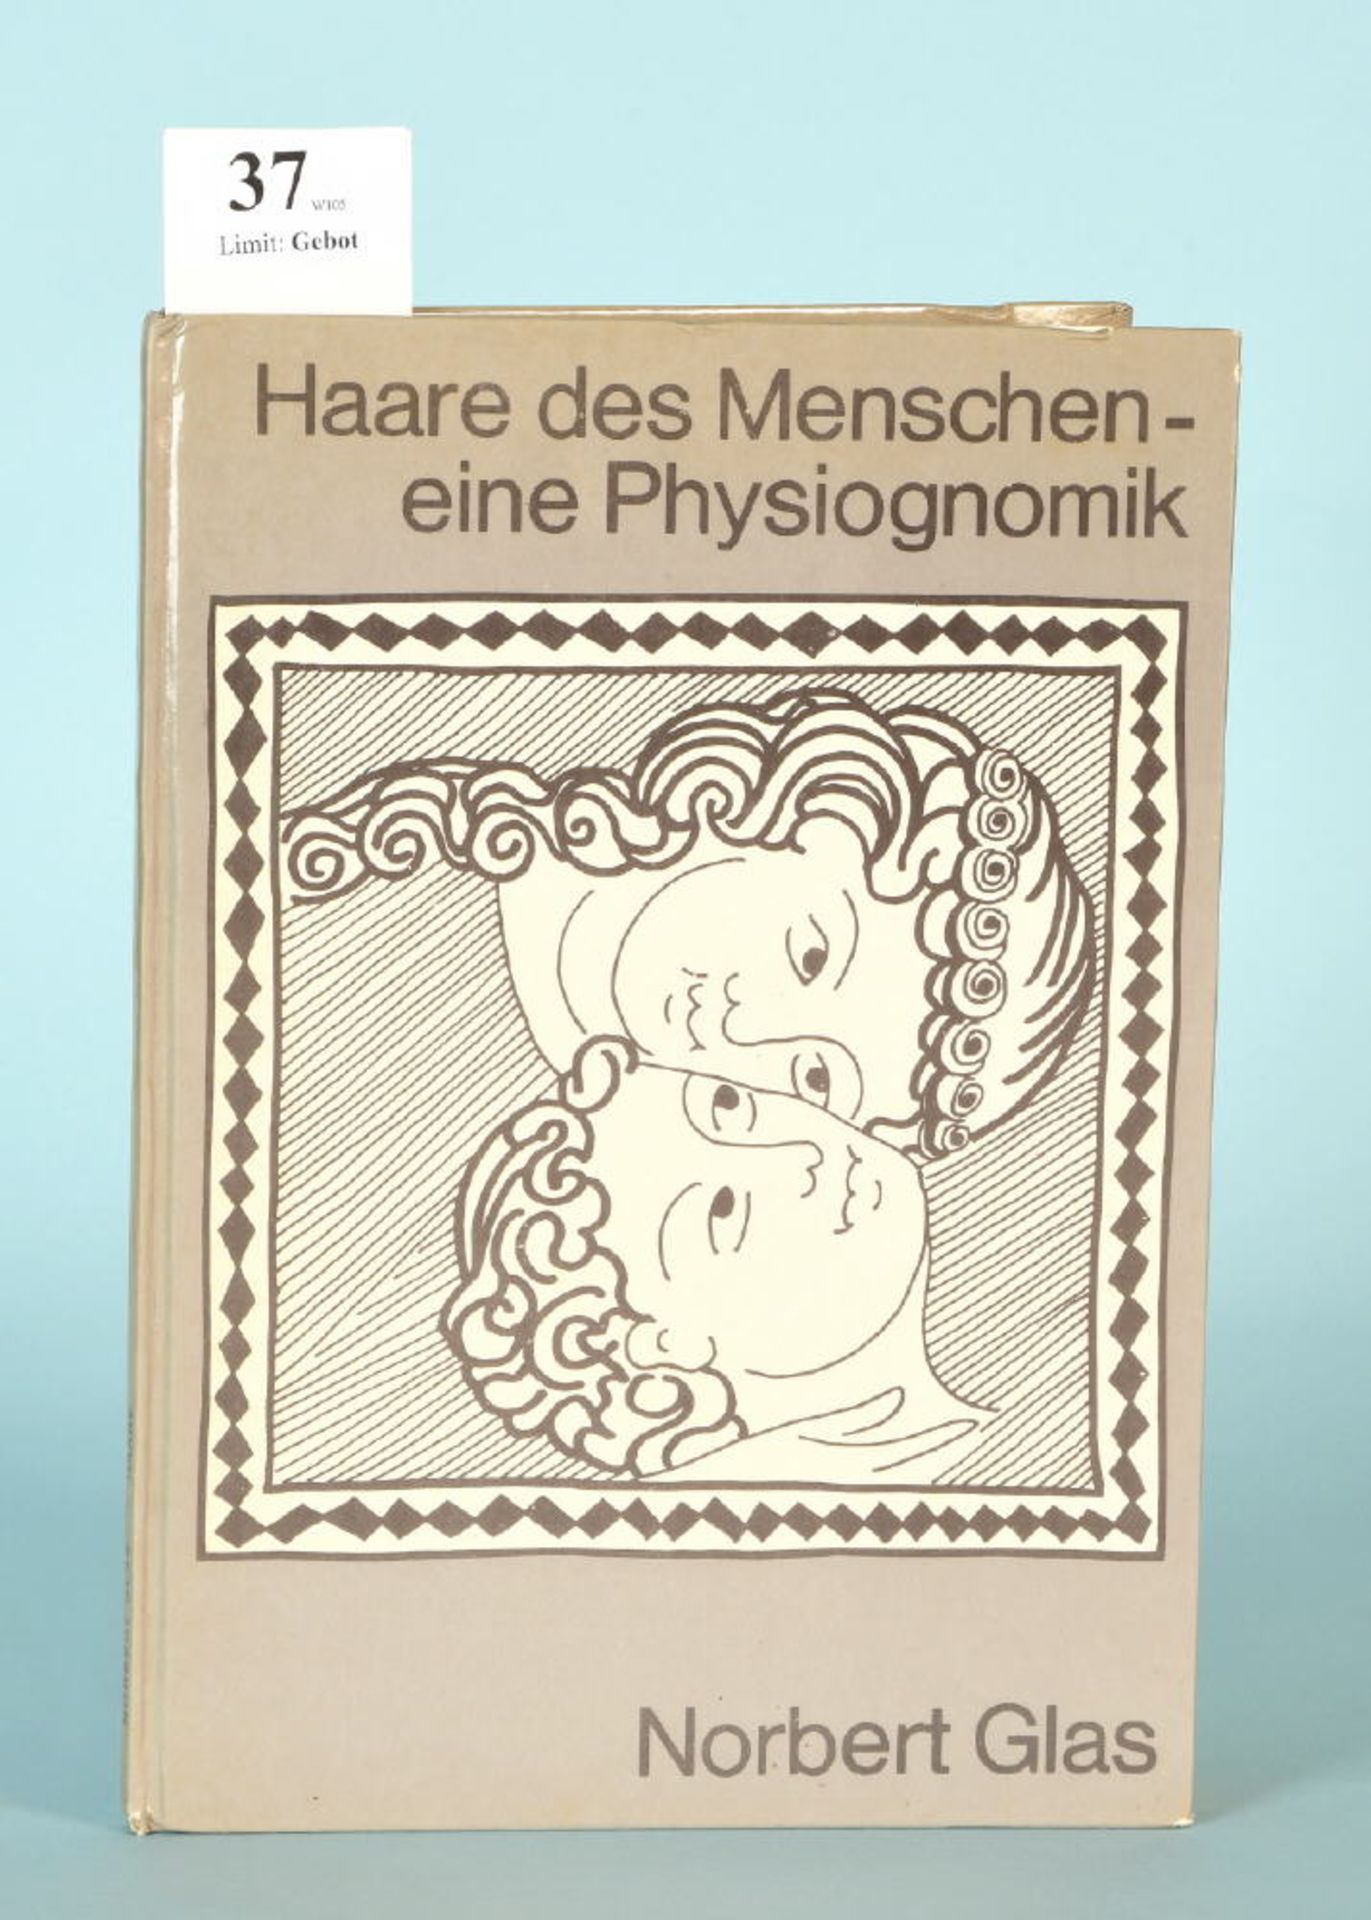 Glas, Norbert "Die Haare des Menschen - eine Physiognomik"